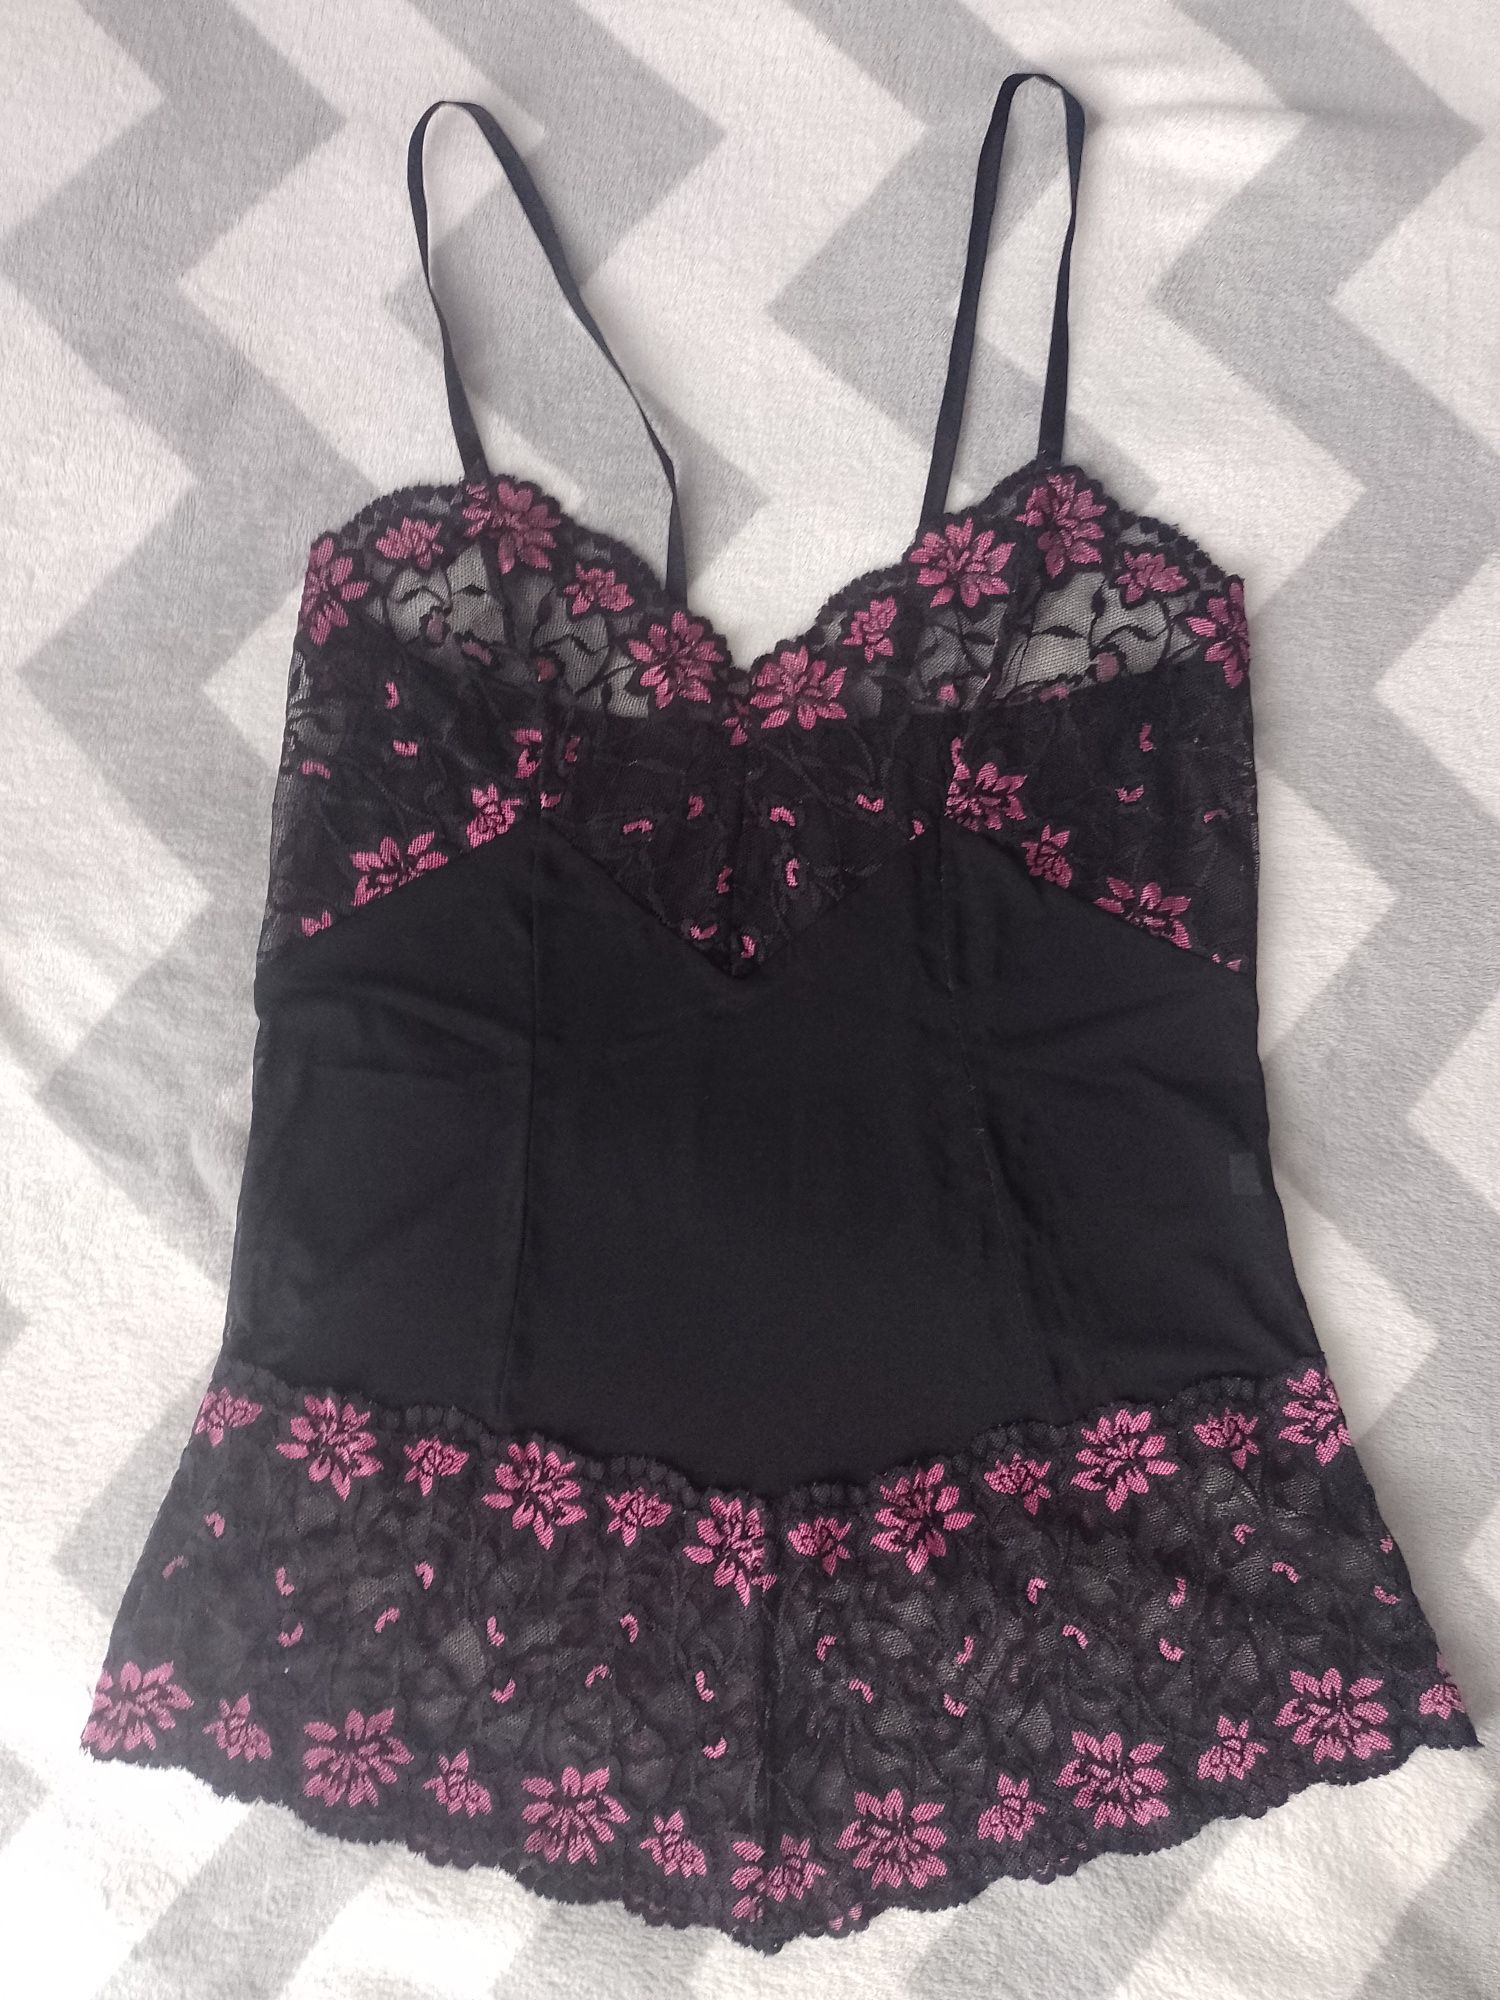 NOWA piżama damska koszula nocna r. M + stringi czarna różowa koronka